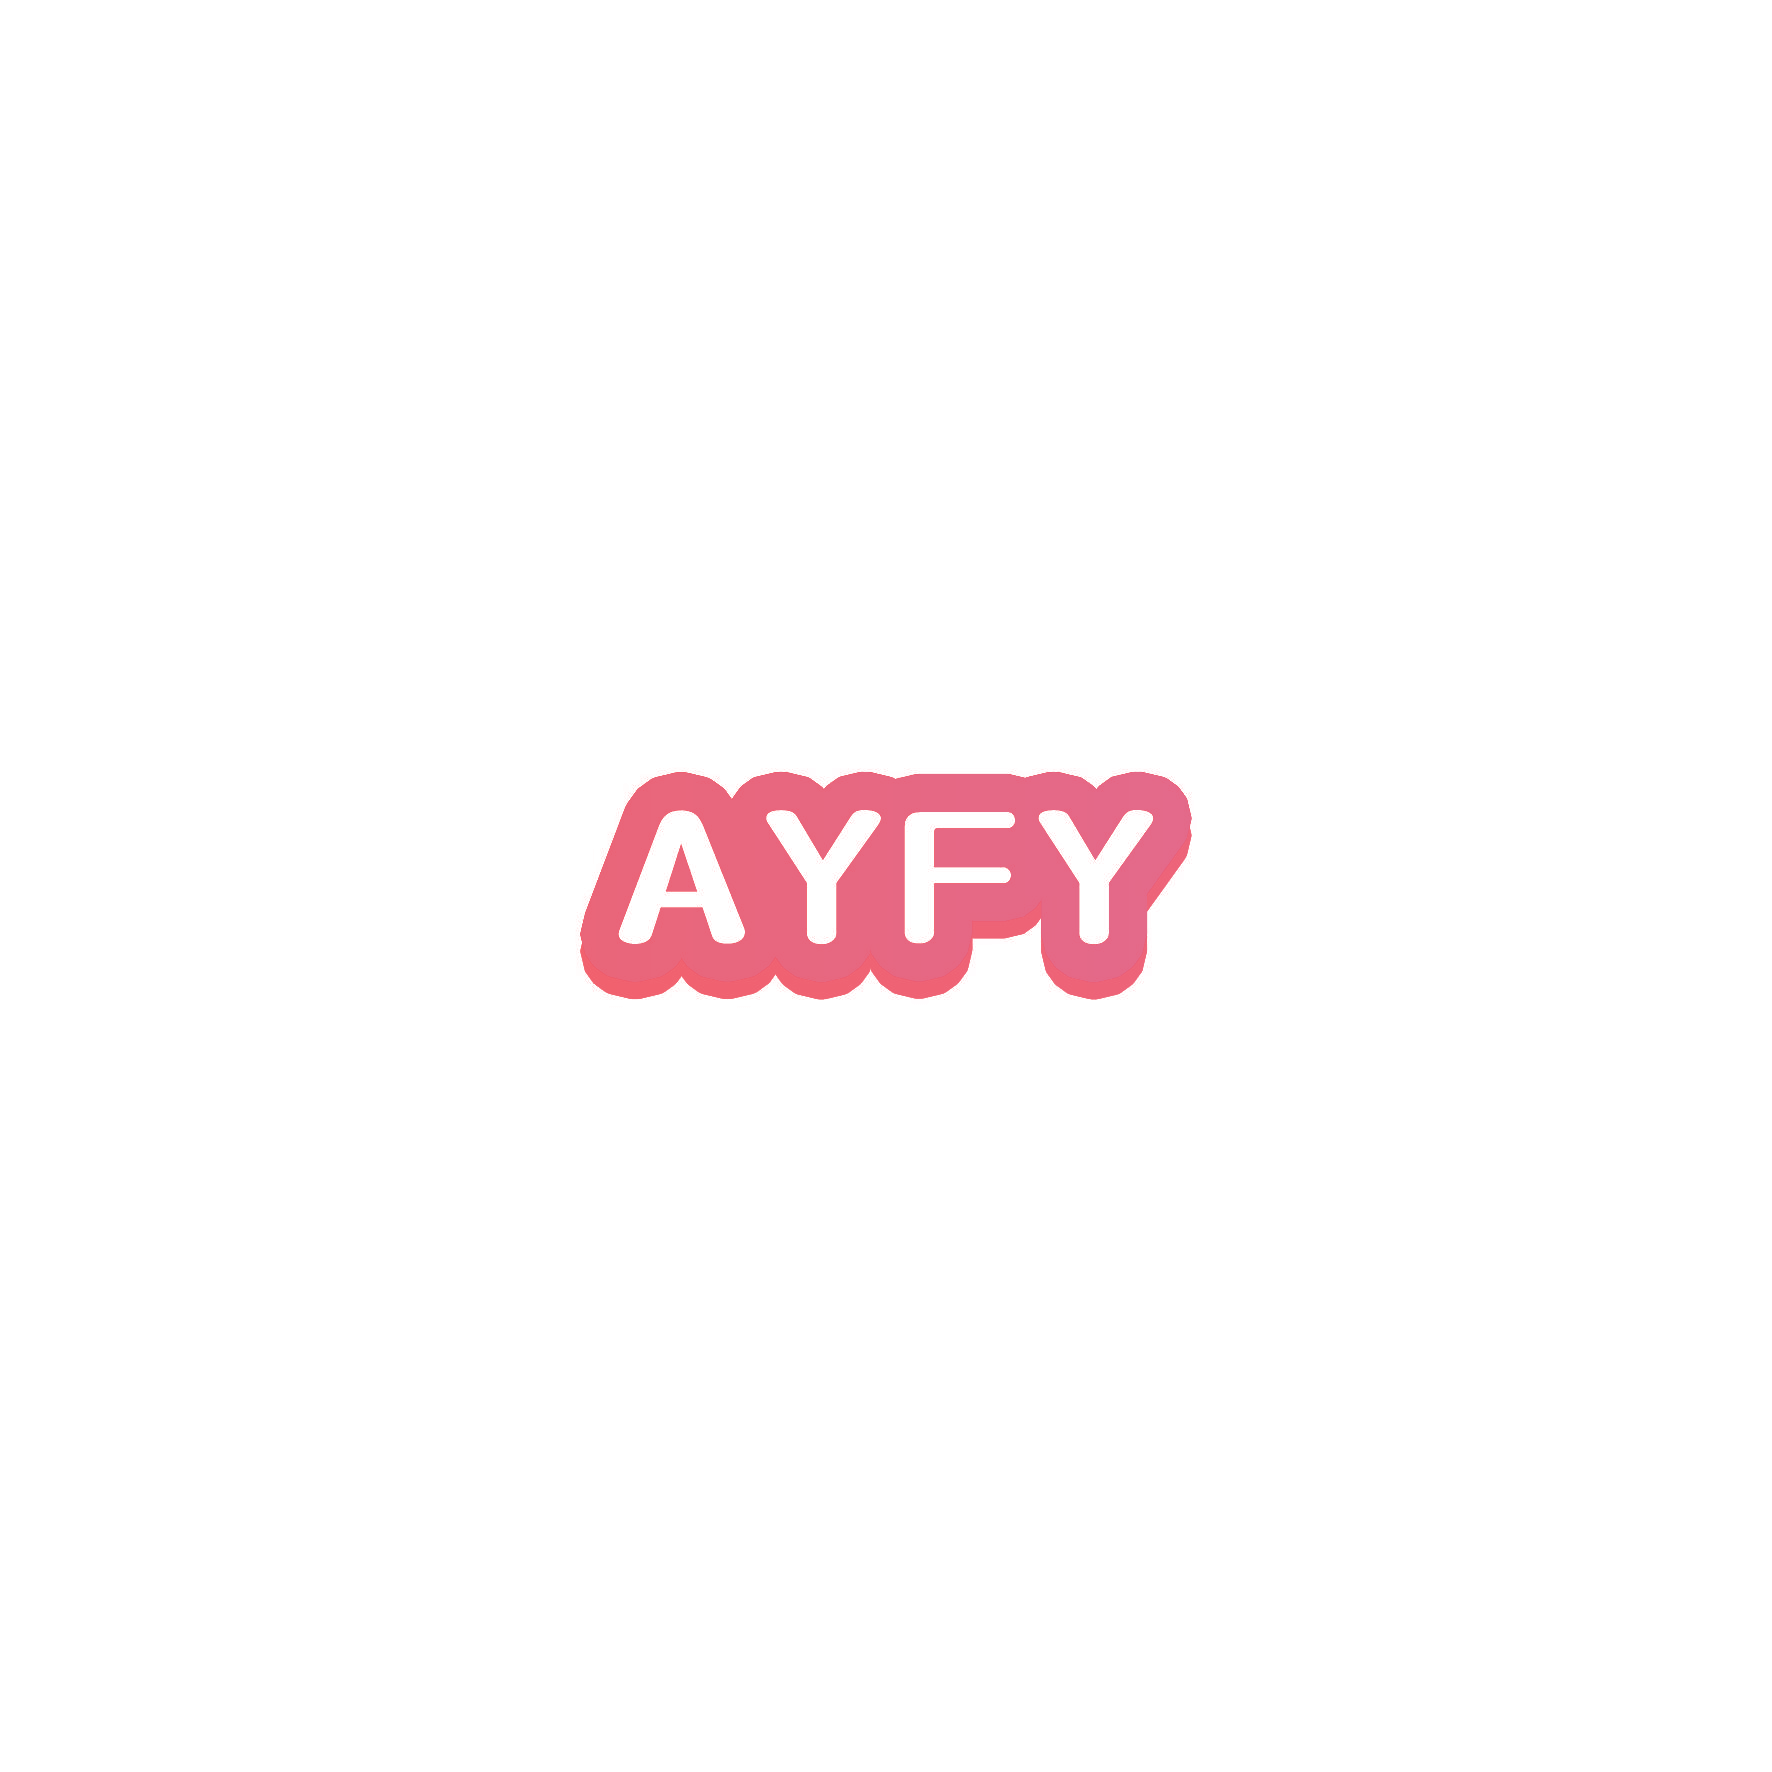 AYFY